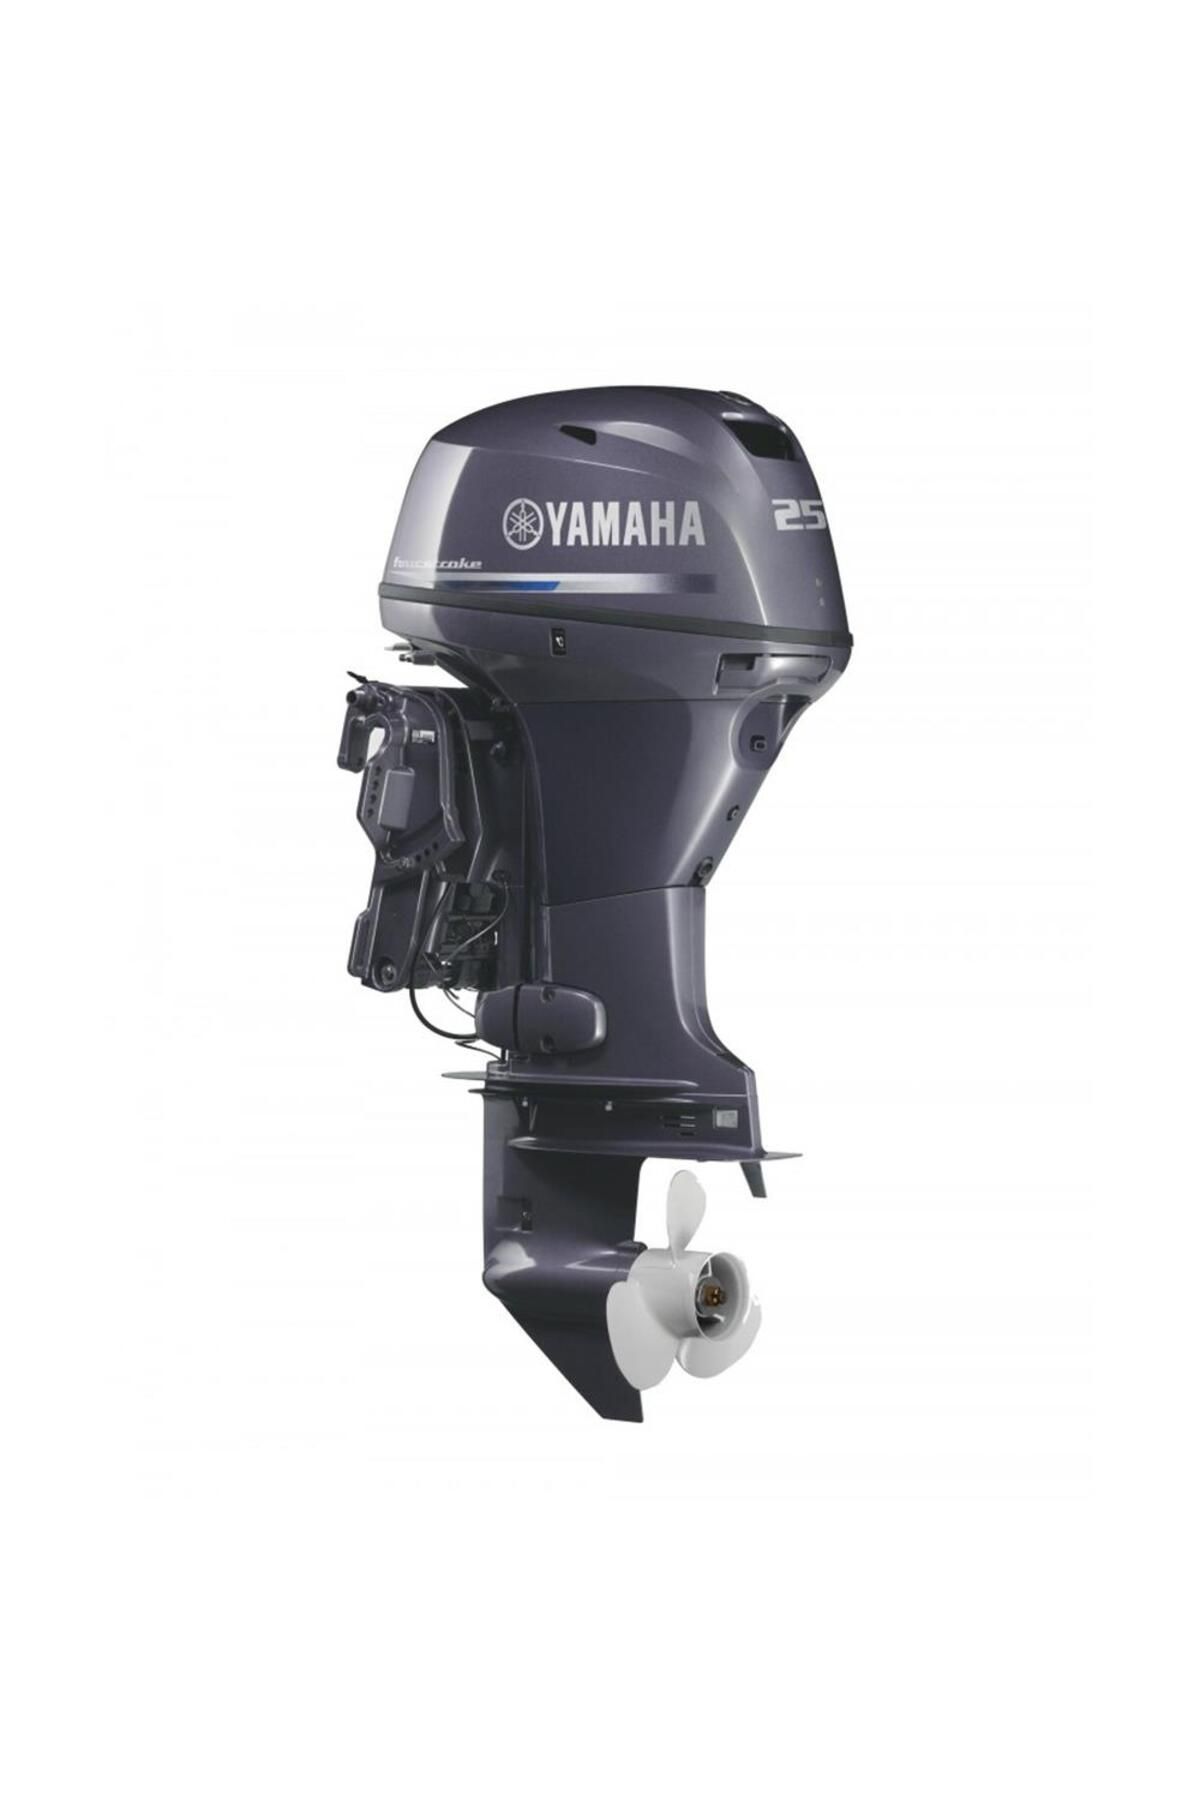 Yamaha Deniz Motoru F25 Dmhs Kısa Şaft Manuel